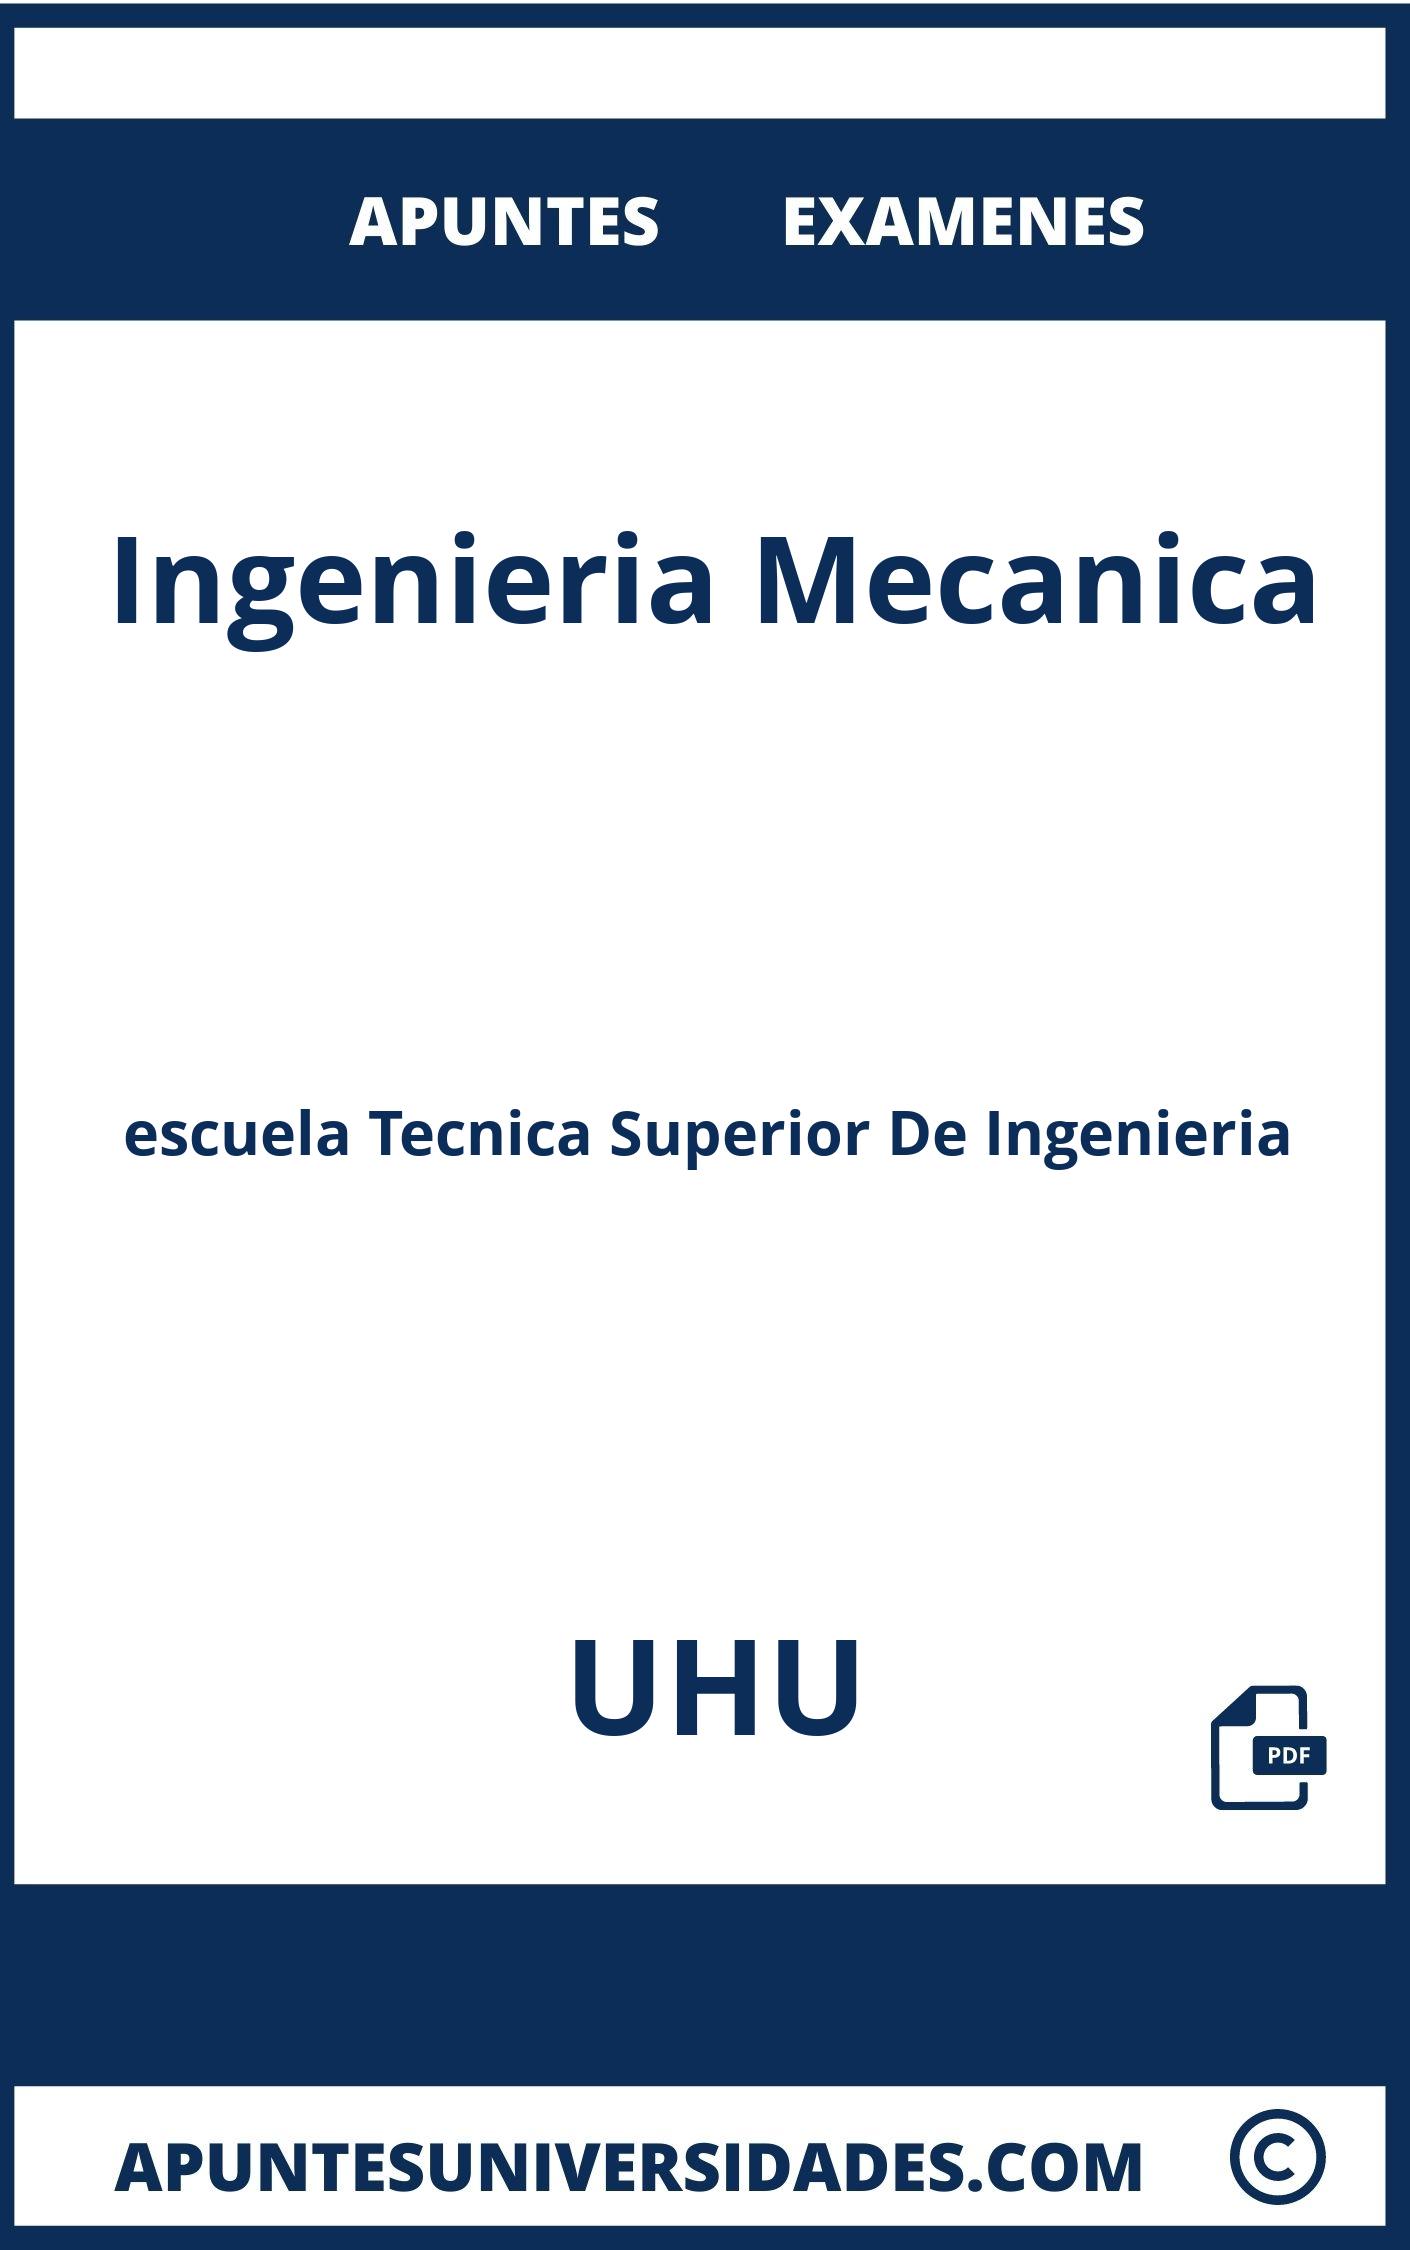 Ingenieria Mecanica UHU Examenes Apuntes